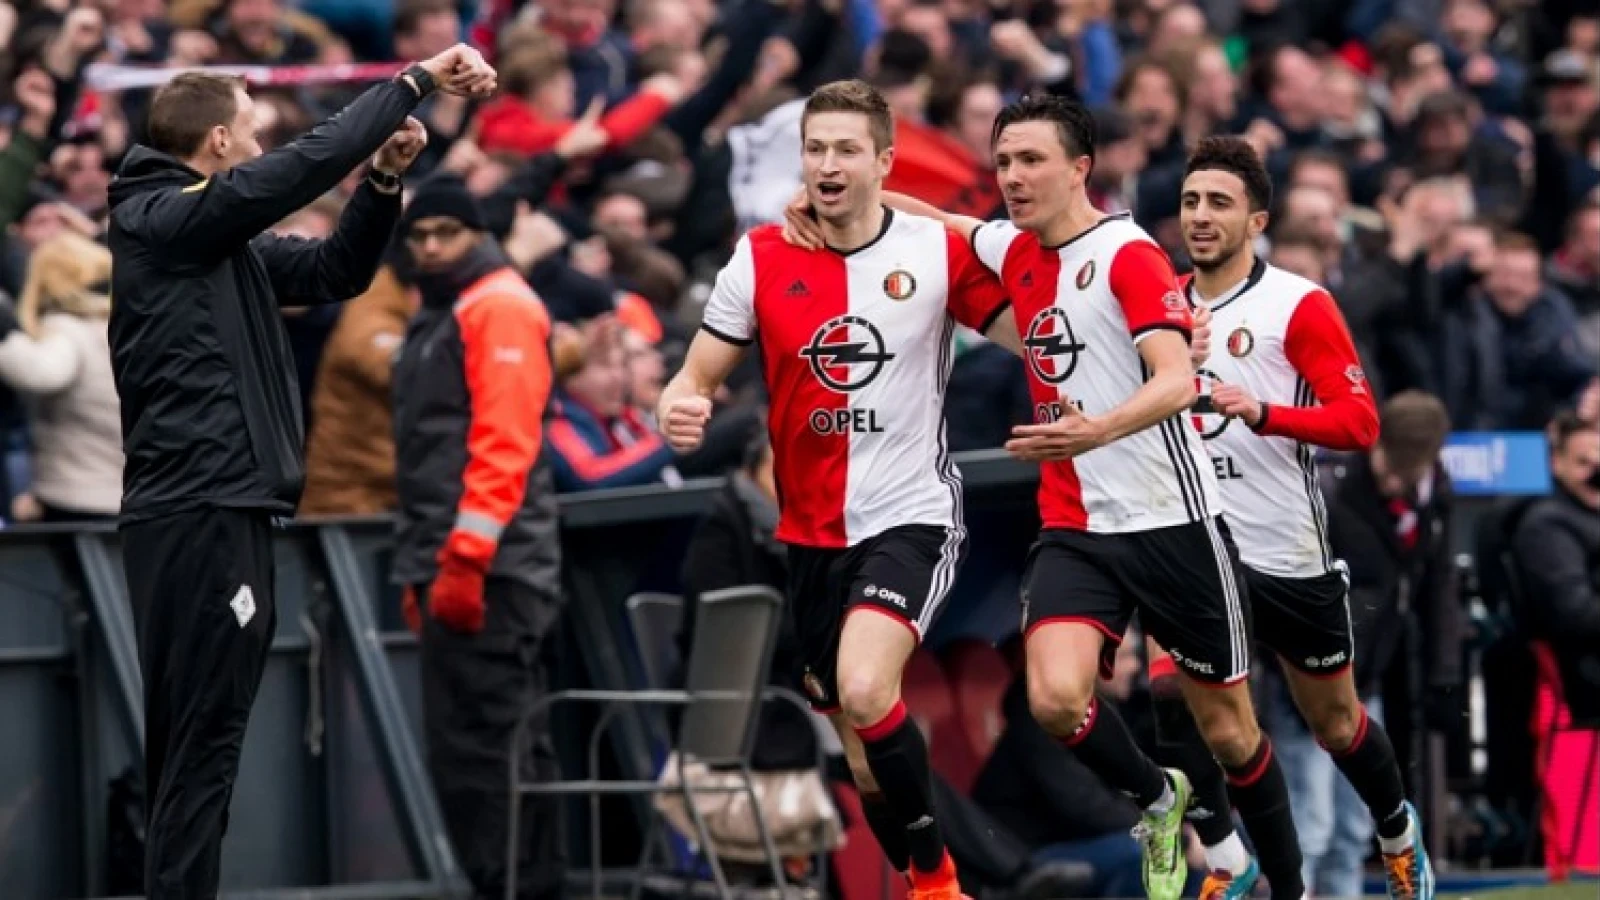 Vijf Feyenoorders maken kans op Gouden Veter